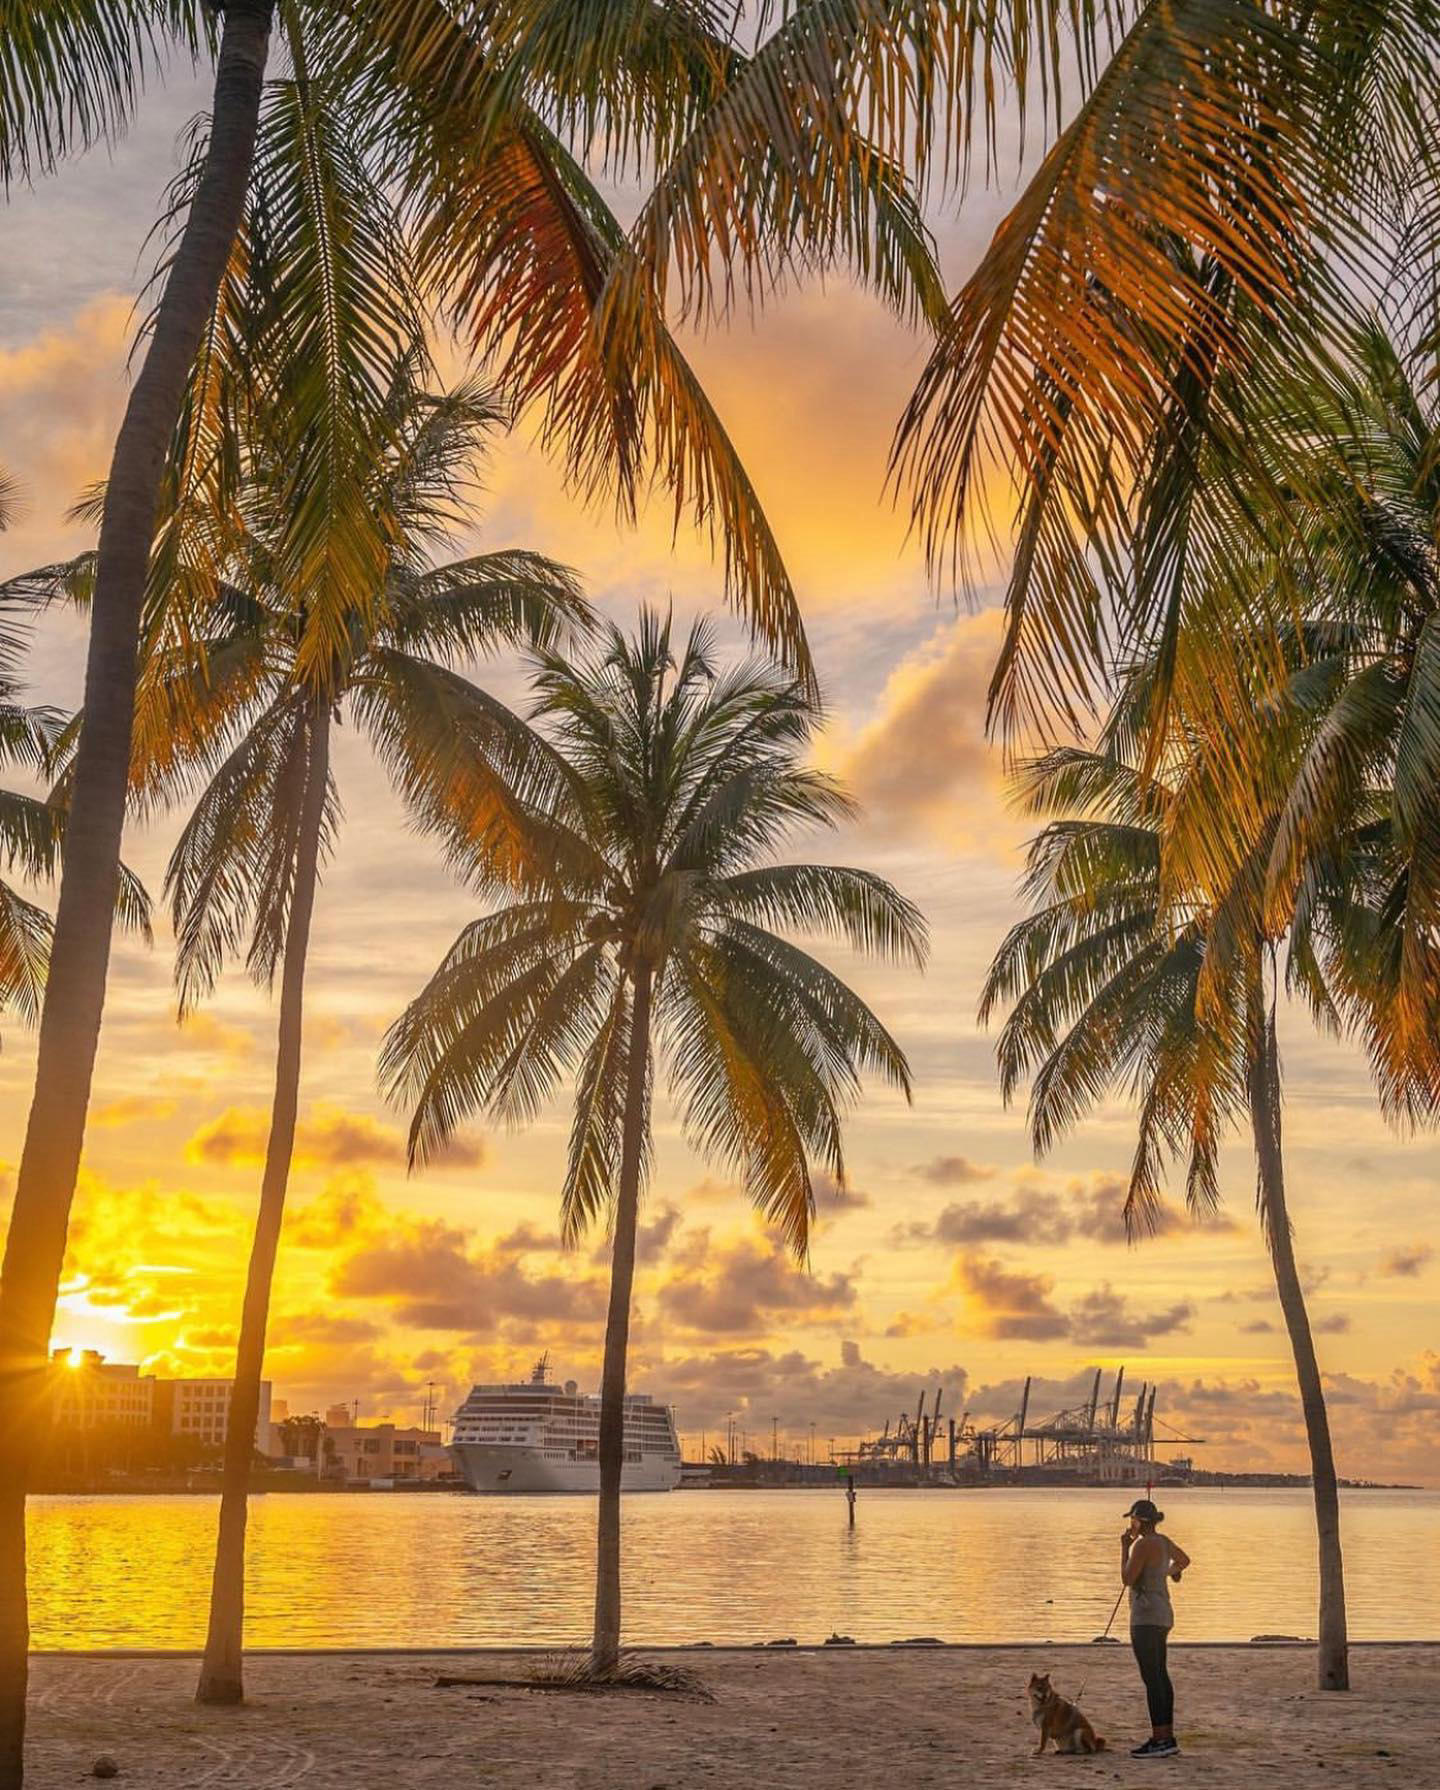 Miami - Good morning Miami